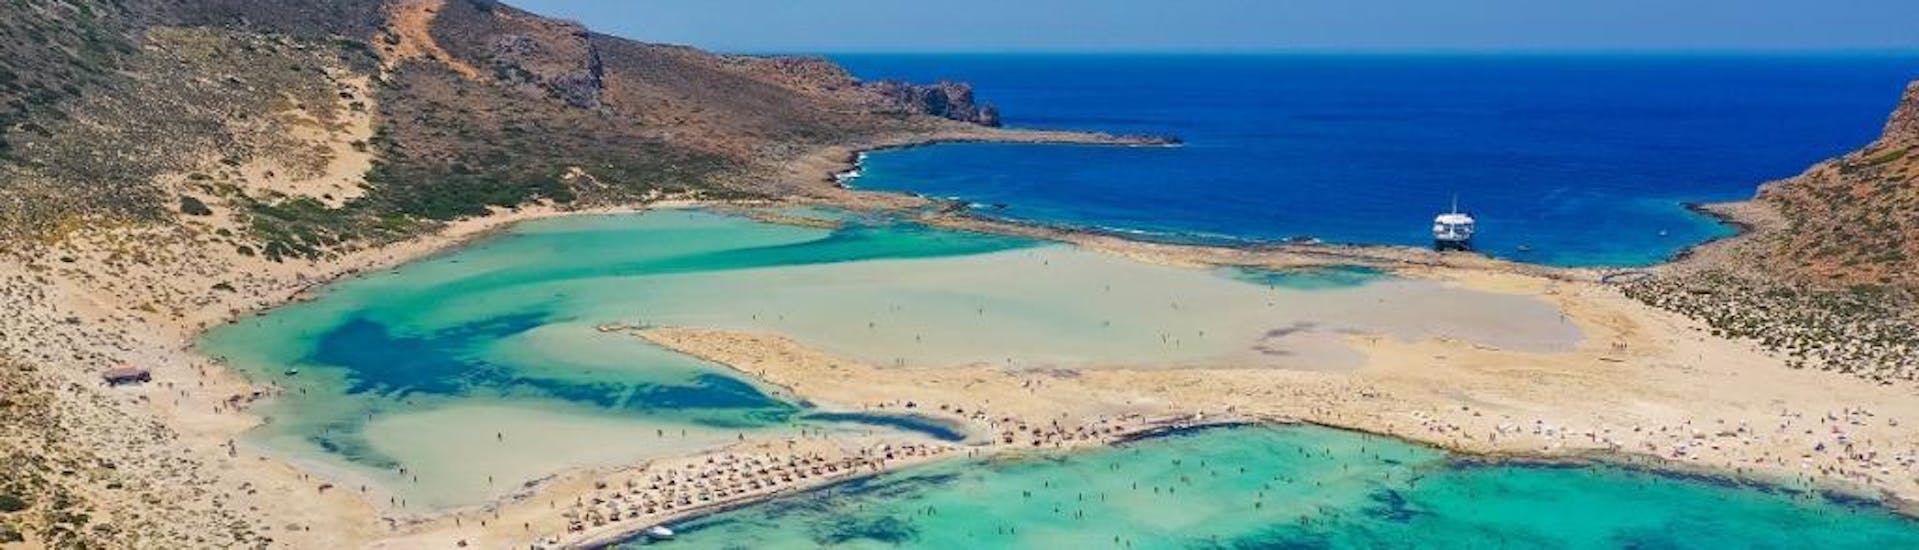 Una delle spiagge che potete visitare con una gita in barca con Cretan Odyssey.